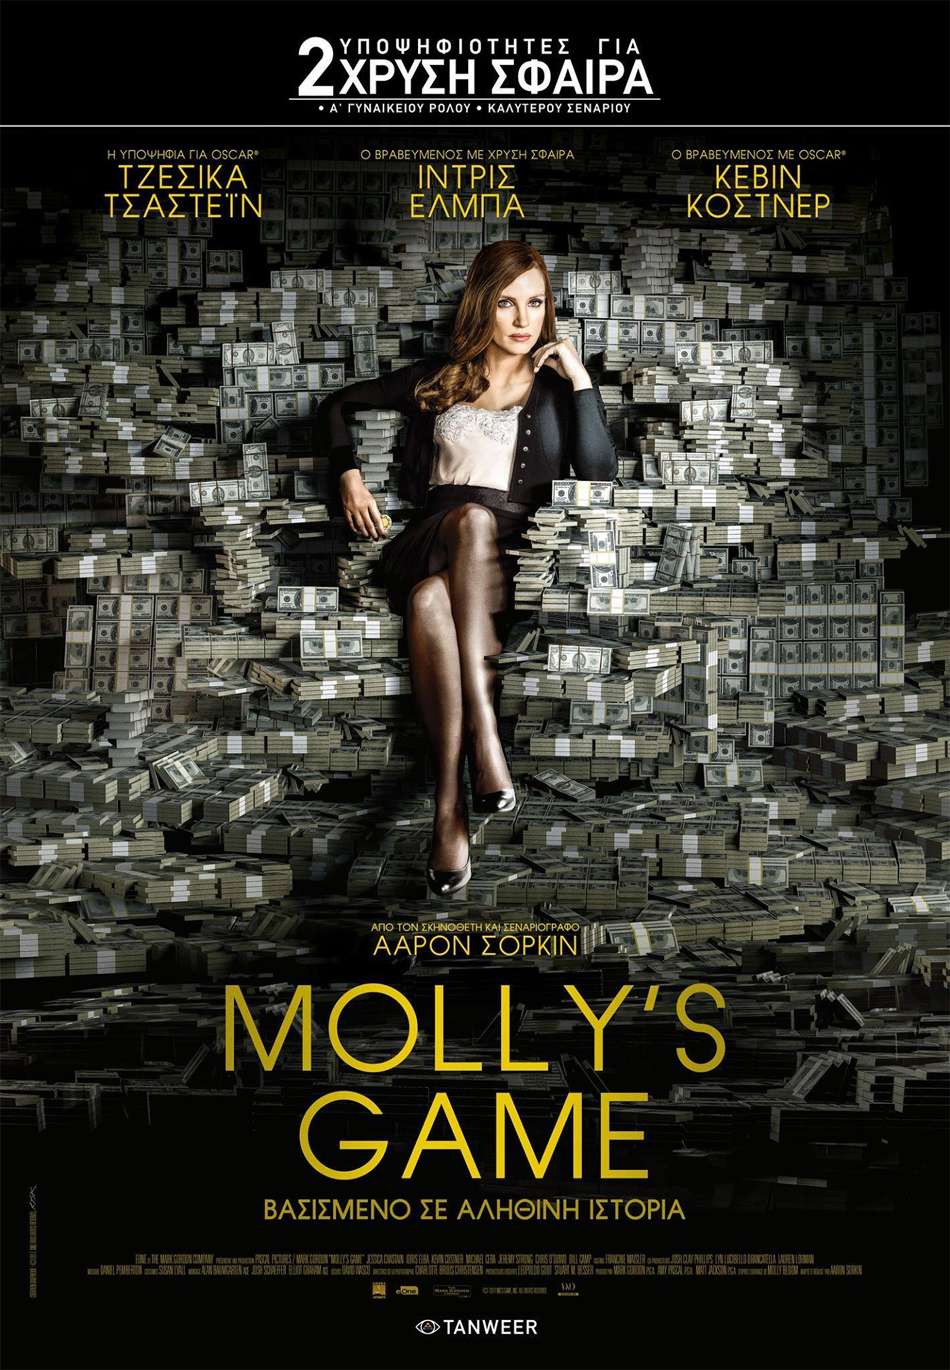  
Molly’s Game Poster Πόστερ